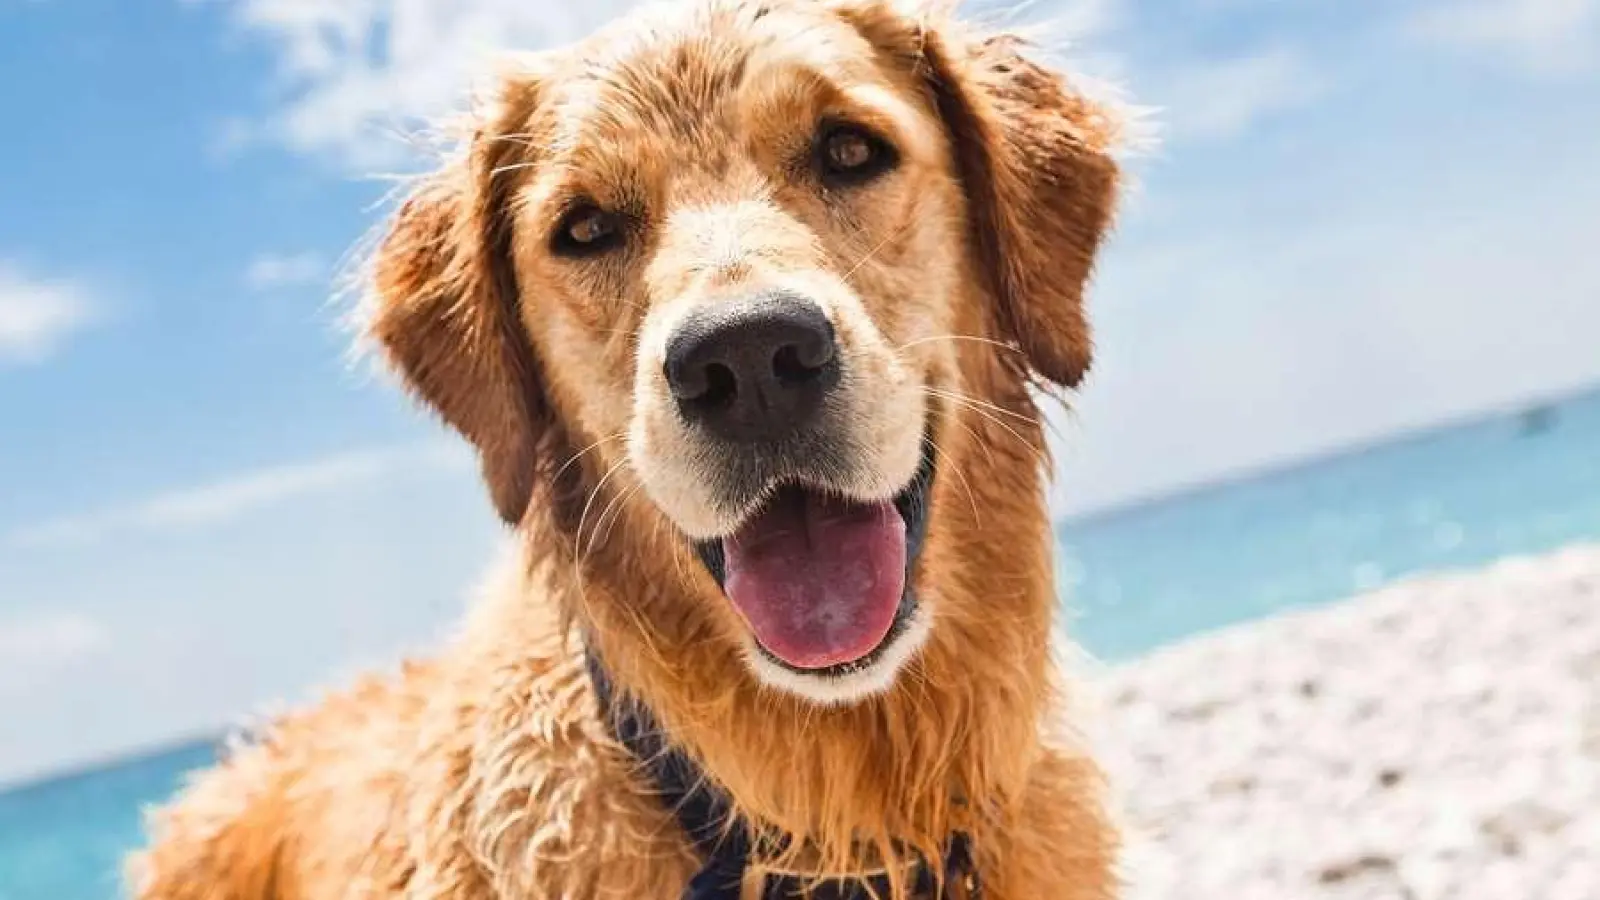 Egal ob Strand oder Berge, auch Hunde genießen die Ferienzeit mit ihrer Familie. (Foto: sbg)